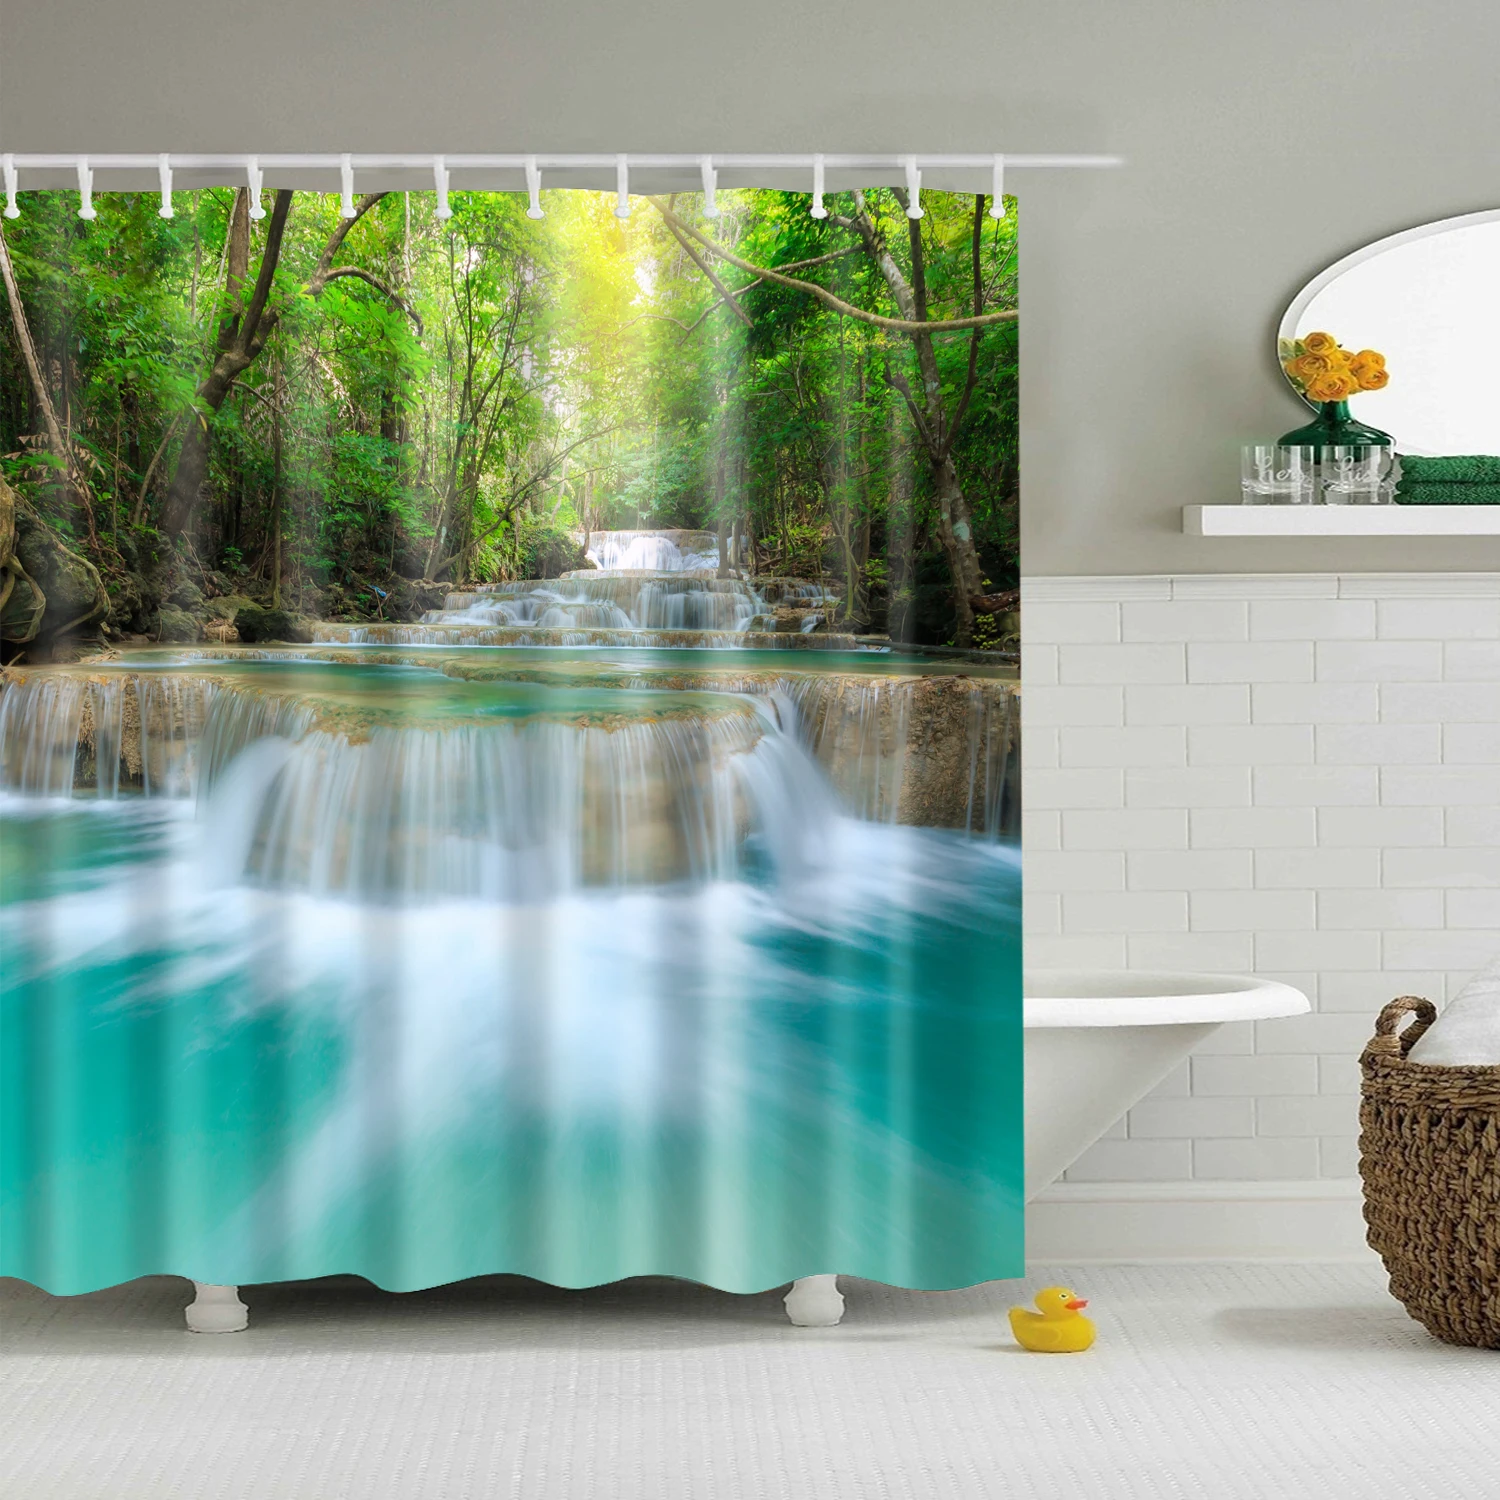 Современная занавеска для душа с морским пляжем и пейзажем, синяя занавеска для ванной, 3D затемненная занавеска для душа, большая занавеска 180x200 см для ванной комнаты - Цвет: E